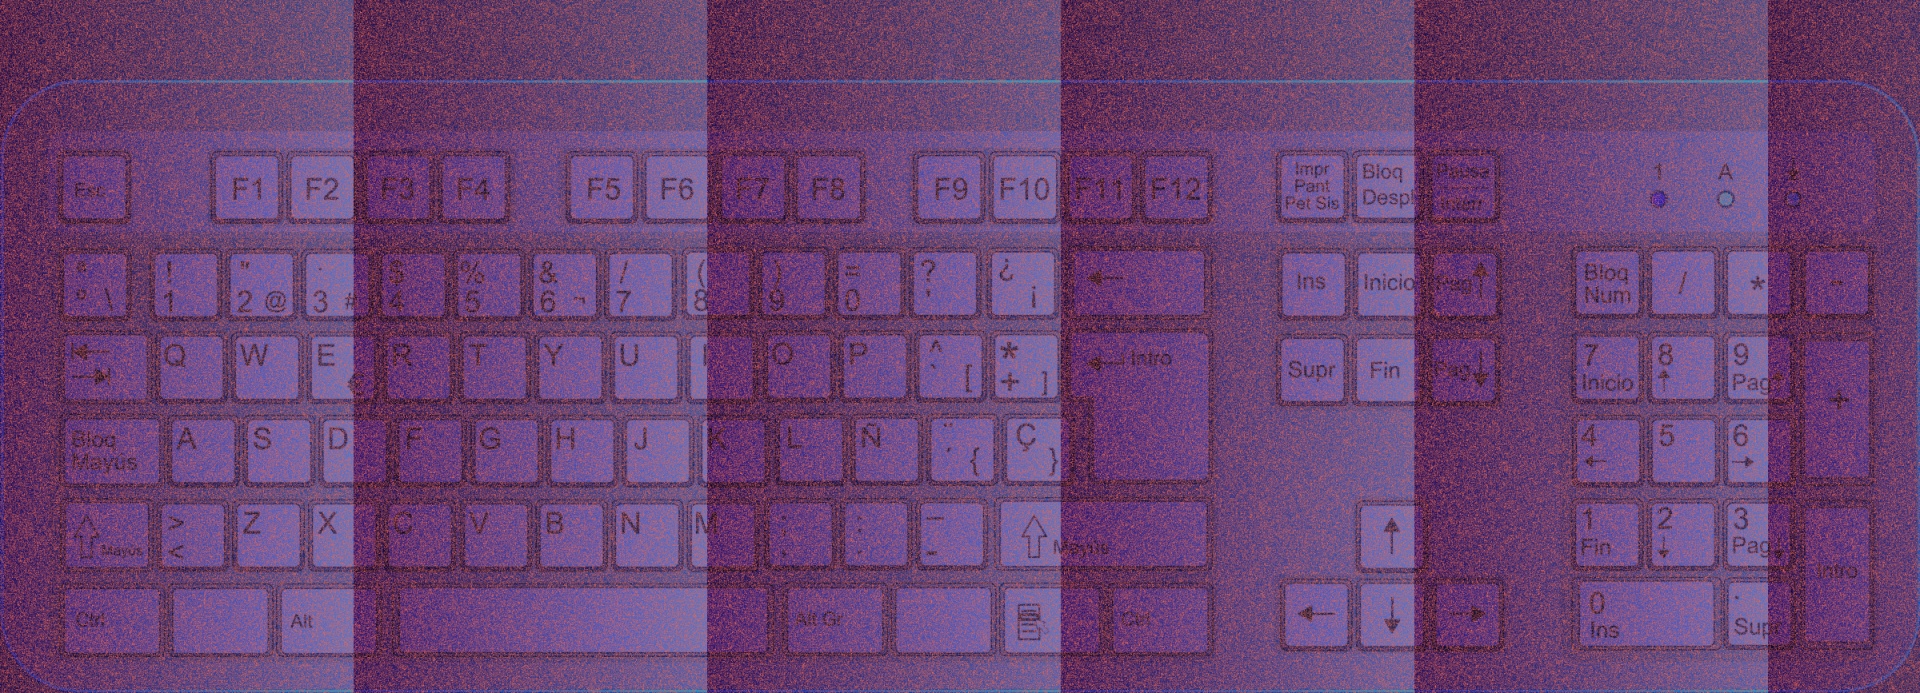 艺术紫色键盘